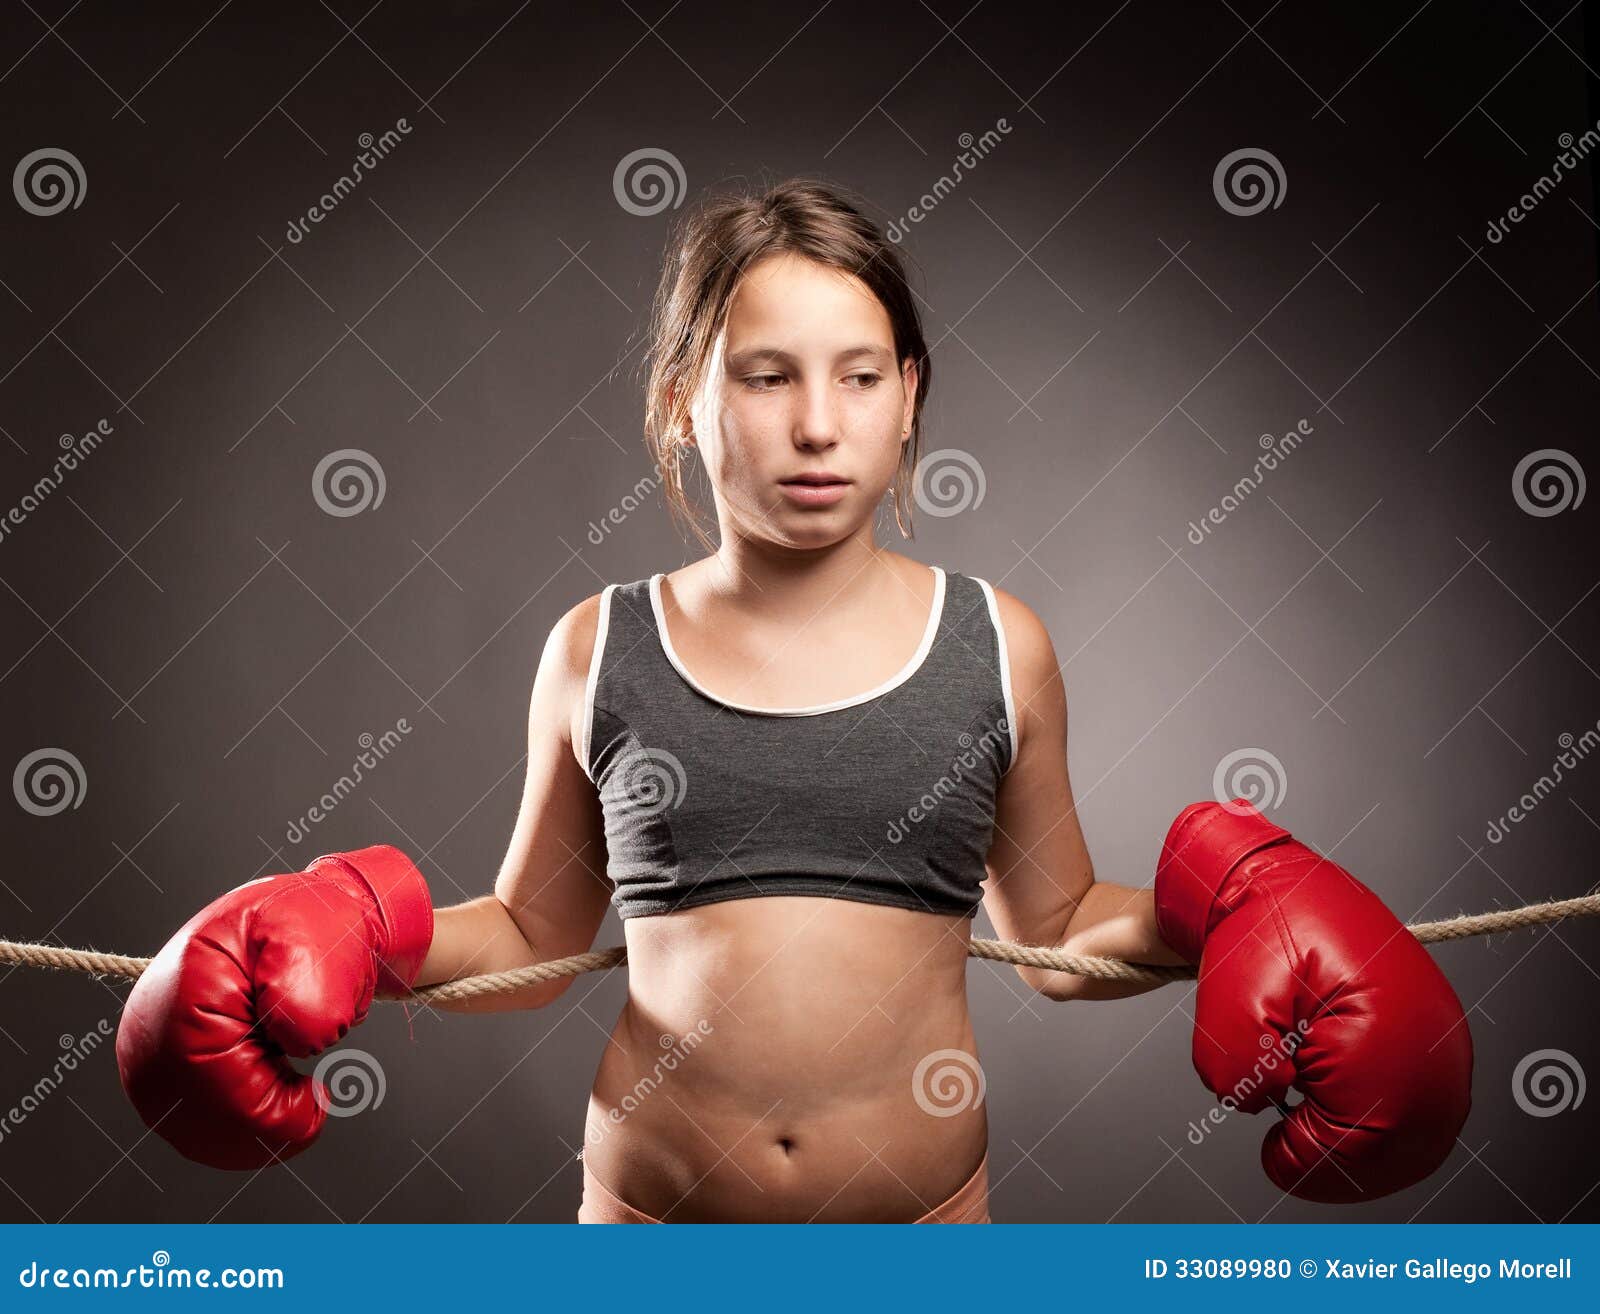 Сильная девушка подросток. Девочка боксер. Подросток в боксерских перчатках. Маленькая боксерка. Маленькая девочка боксерша.